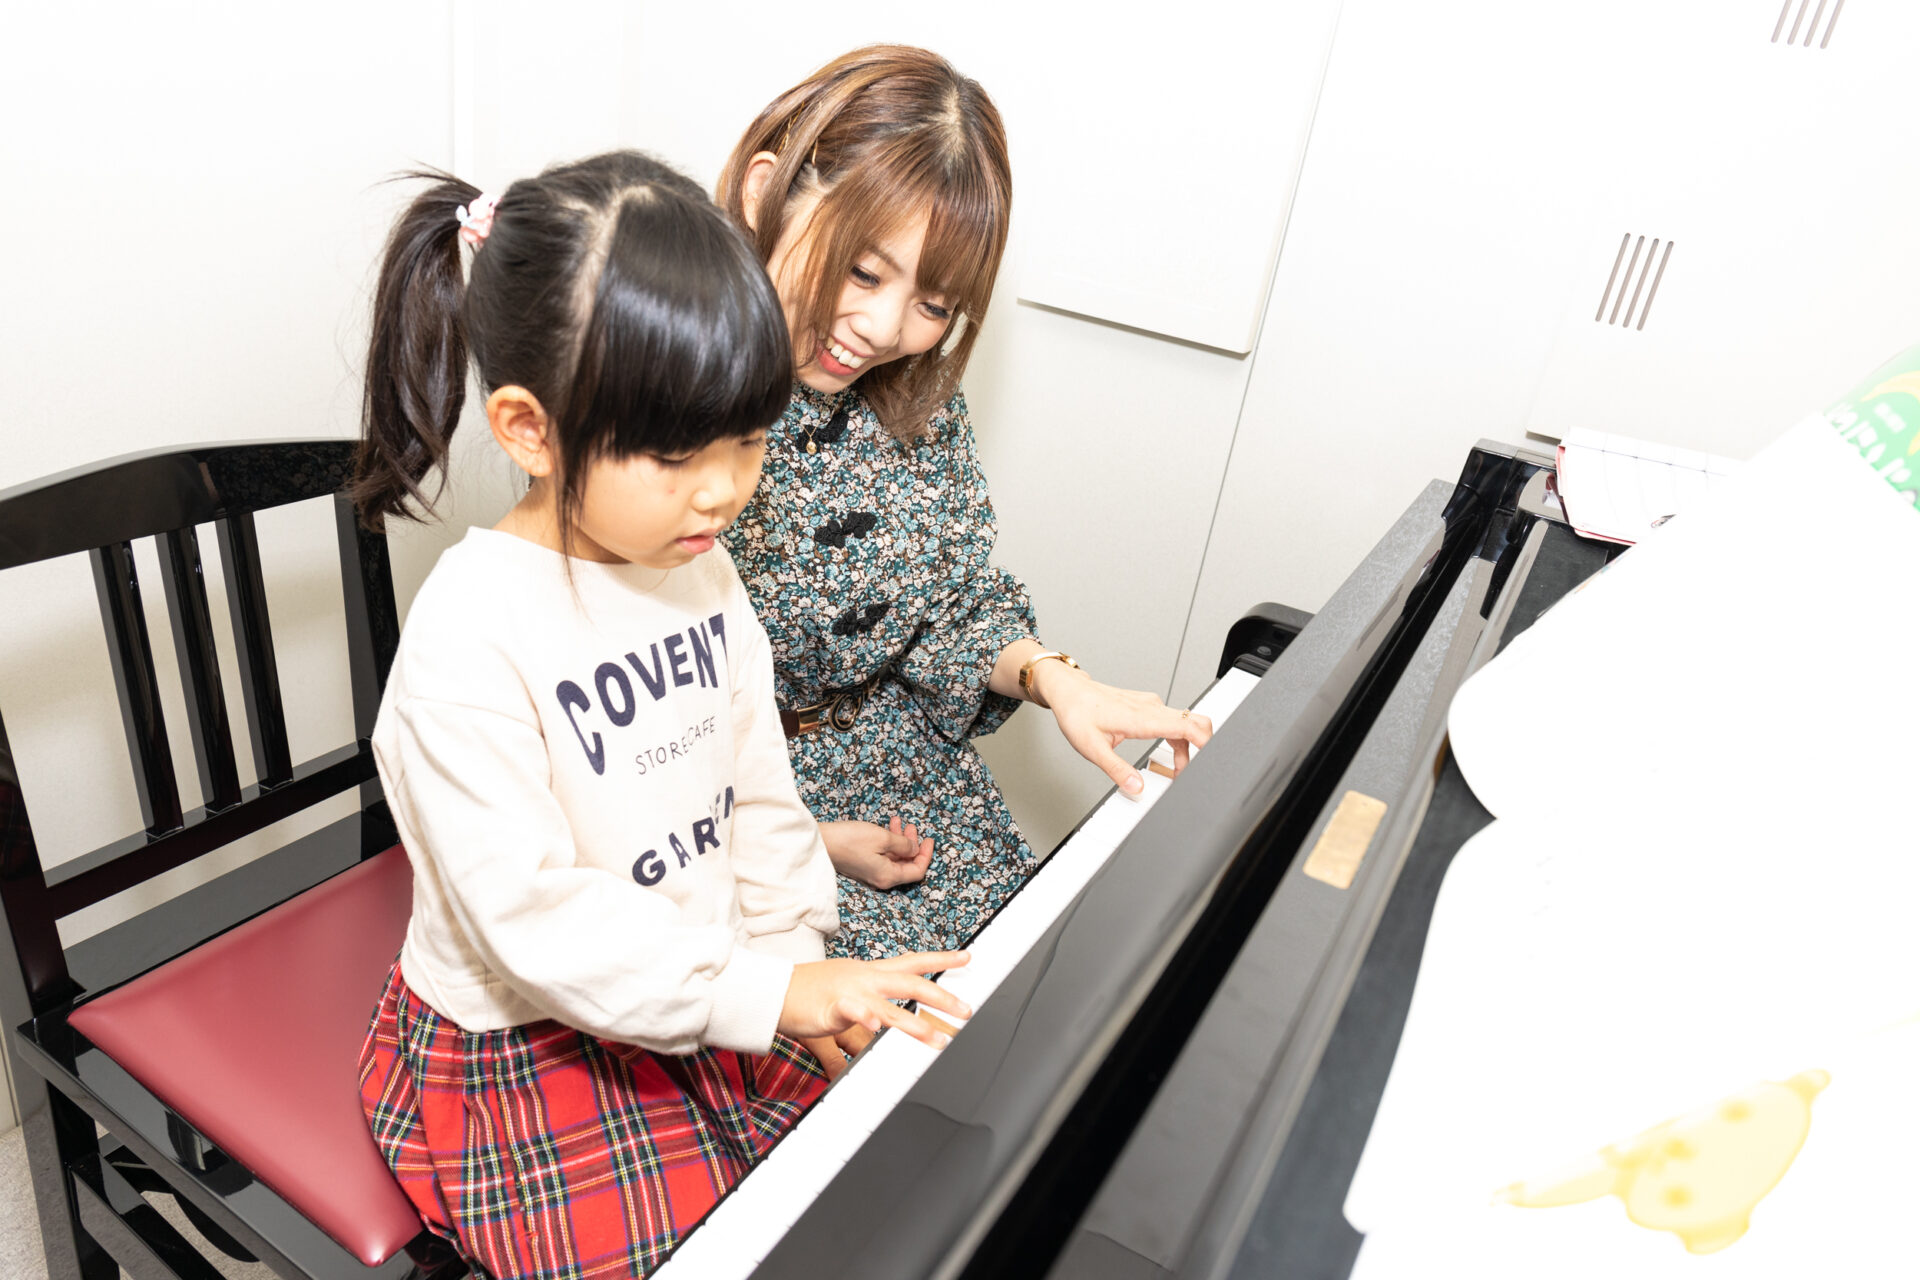 ピアノを演奏する子供